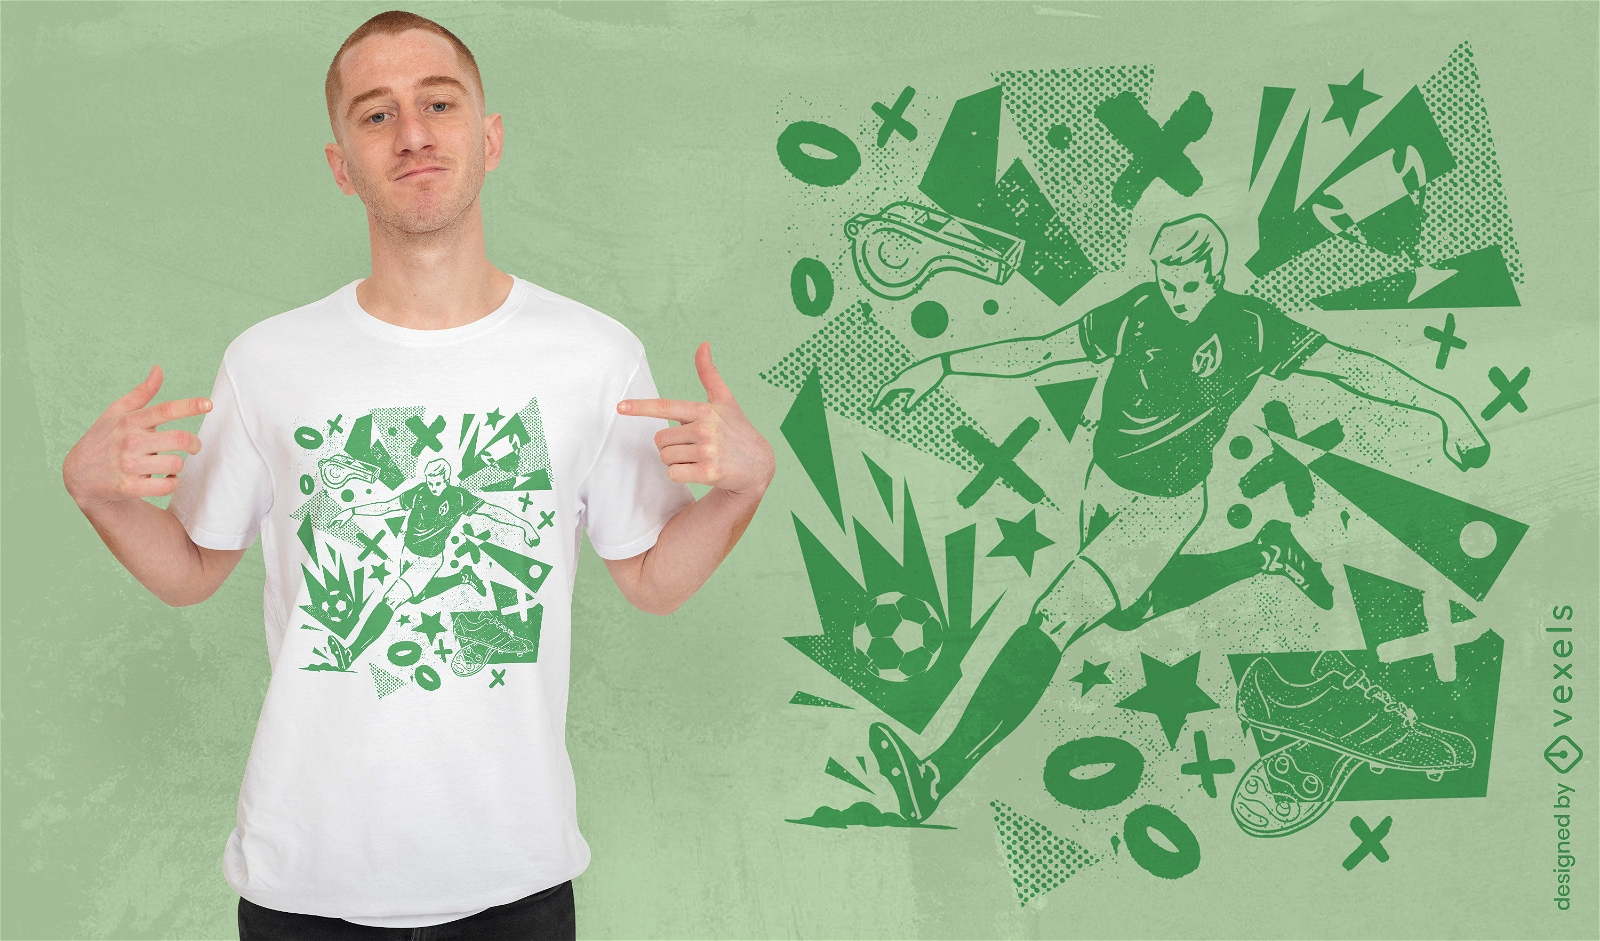 Green soccer team t-shirt design